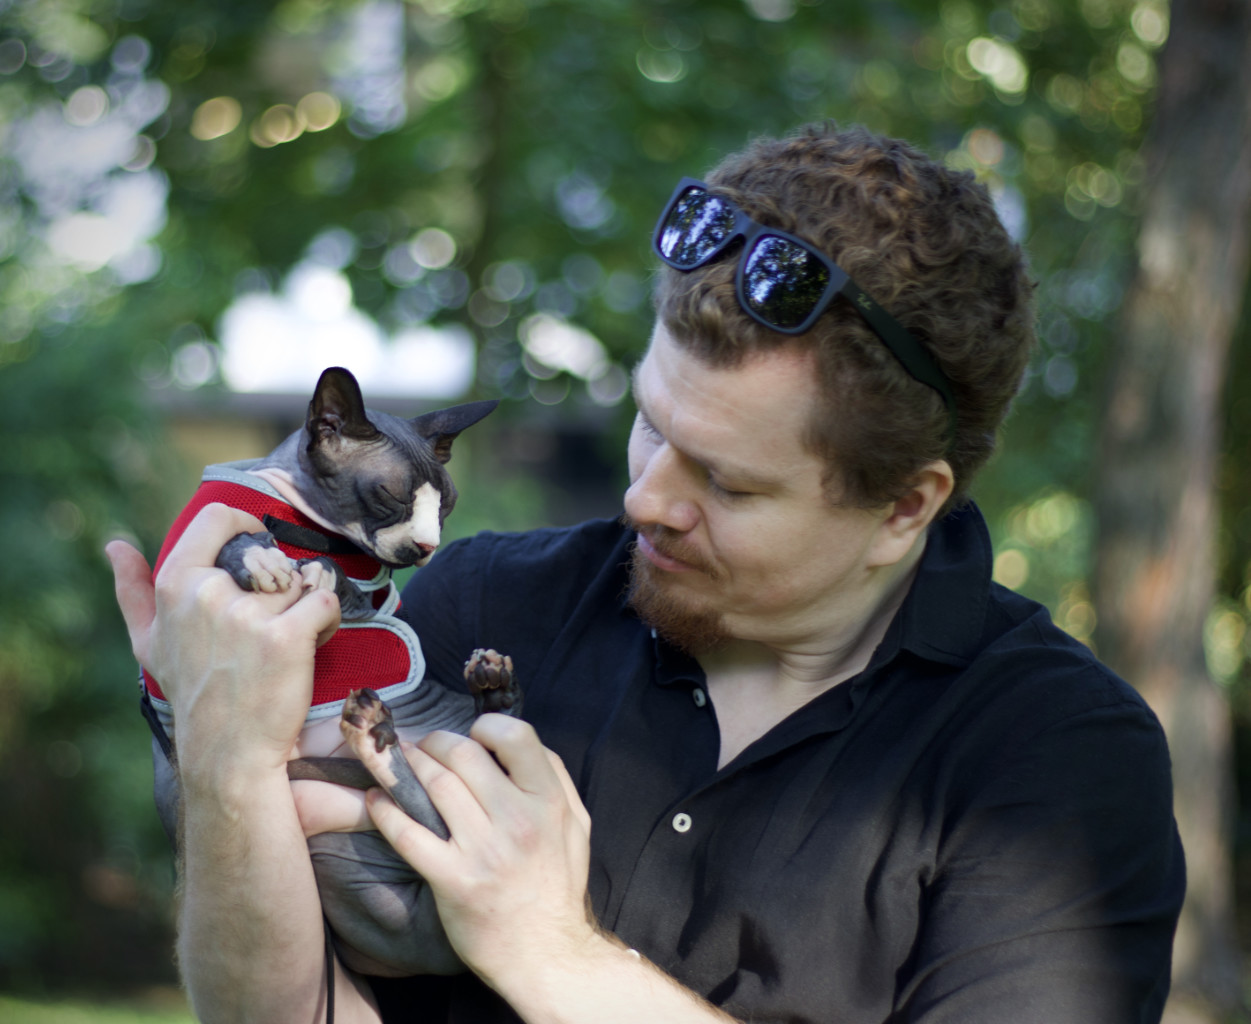 Me with my cat Zbyniu, chillin in a park, Kraków 2020